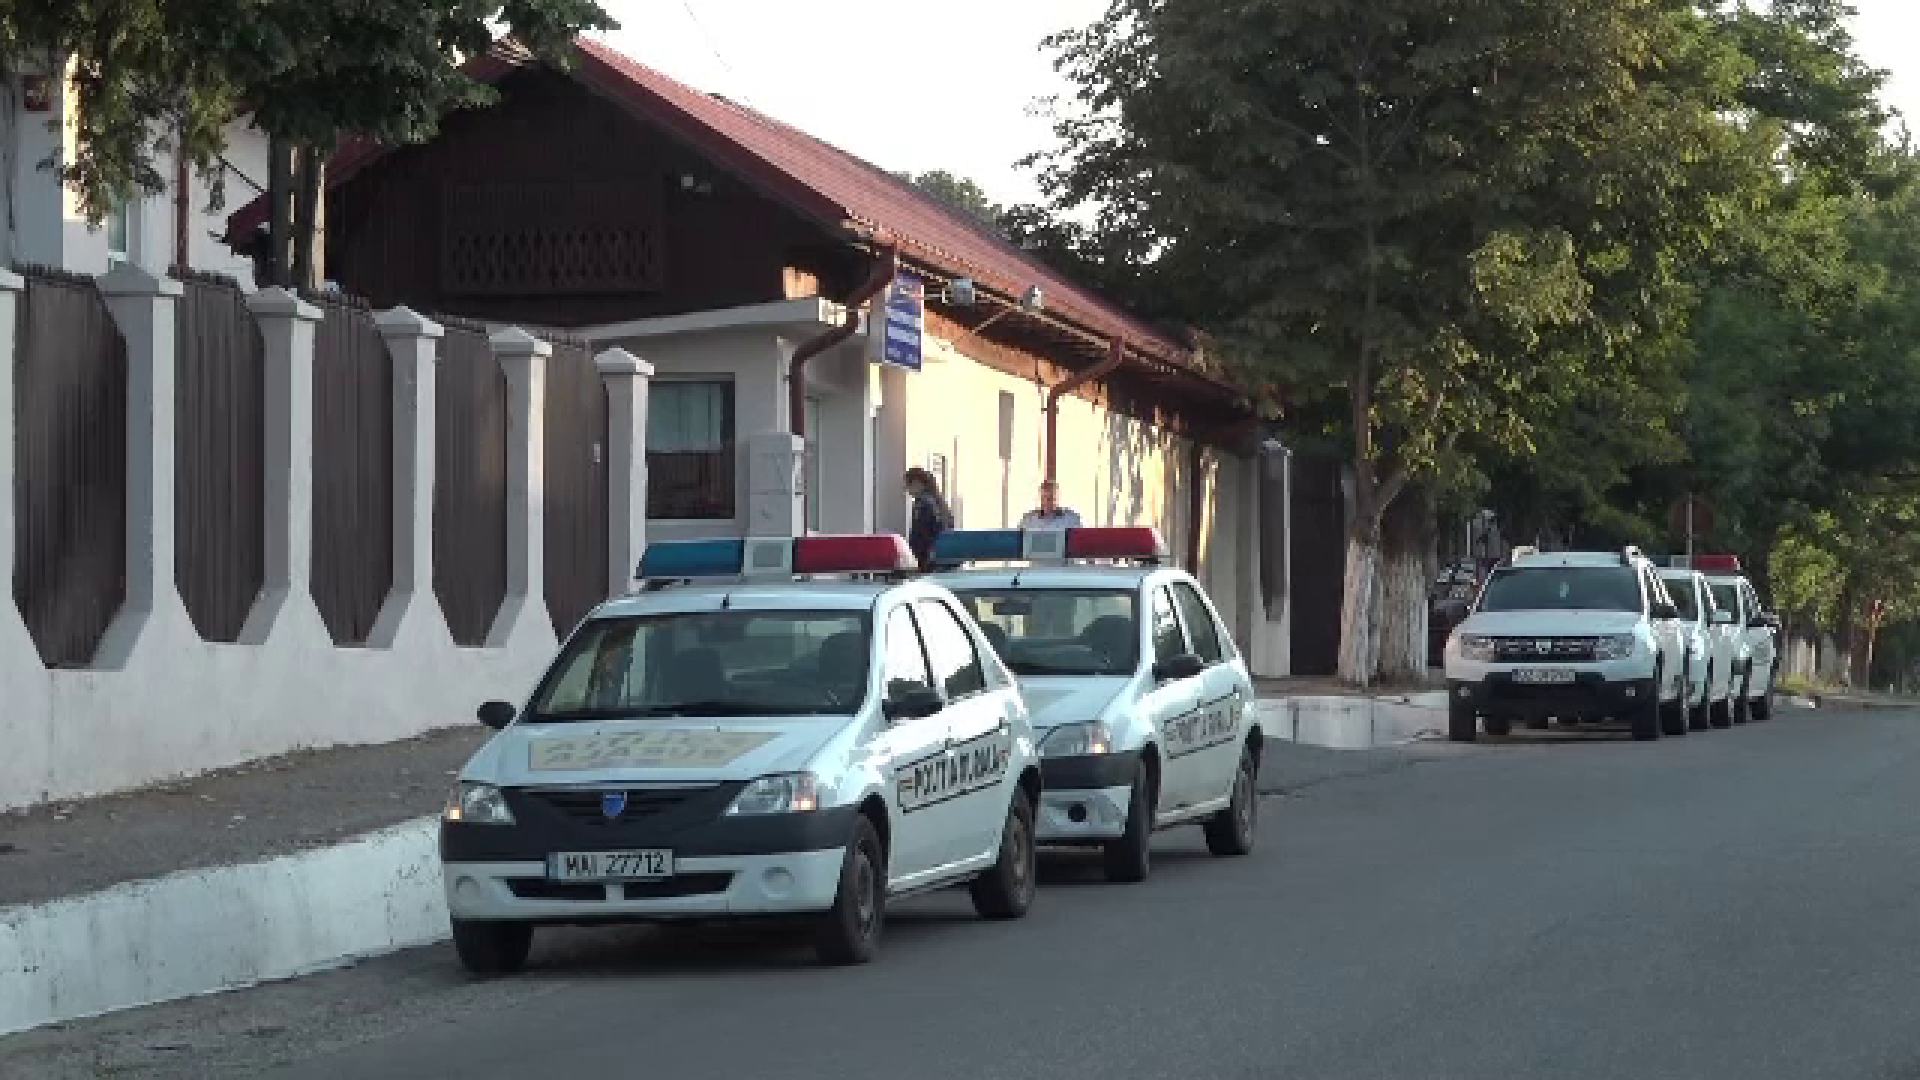 Anchetă la Buzău după ce o polițistă ar fi ţinut cu forţa 2 copii într-o gheretă